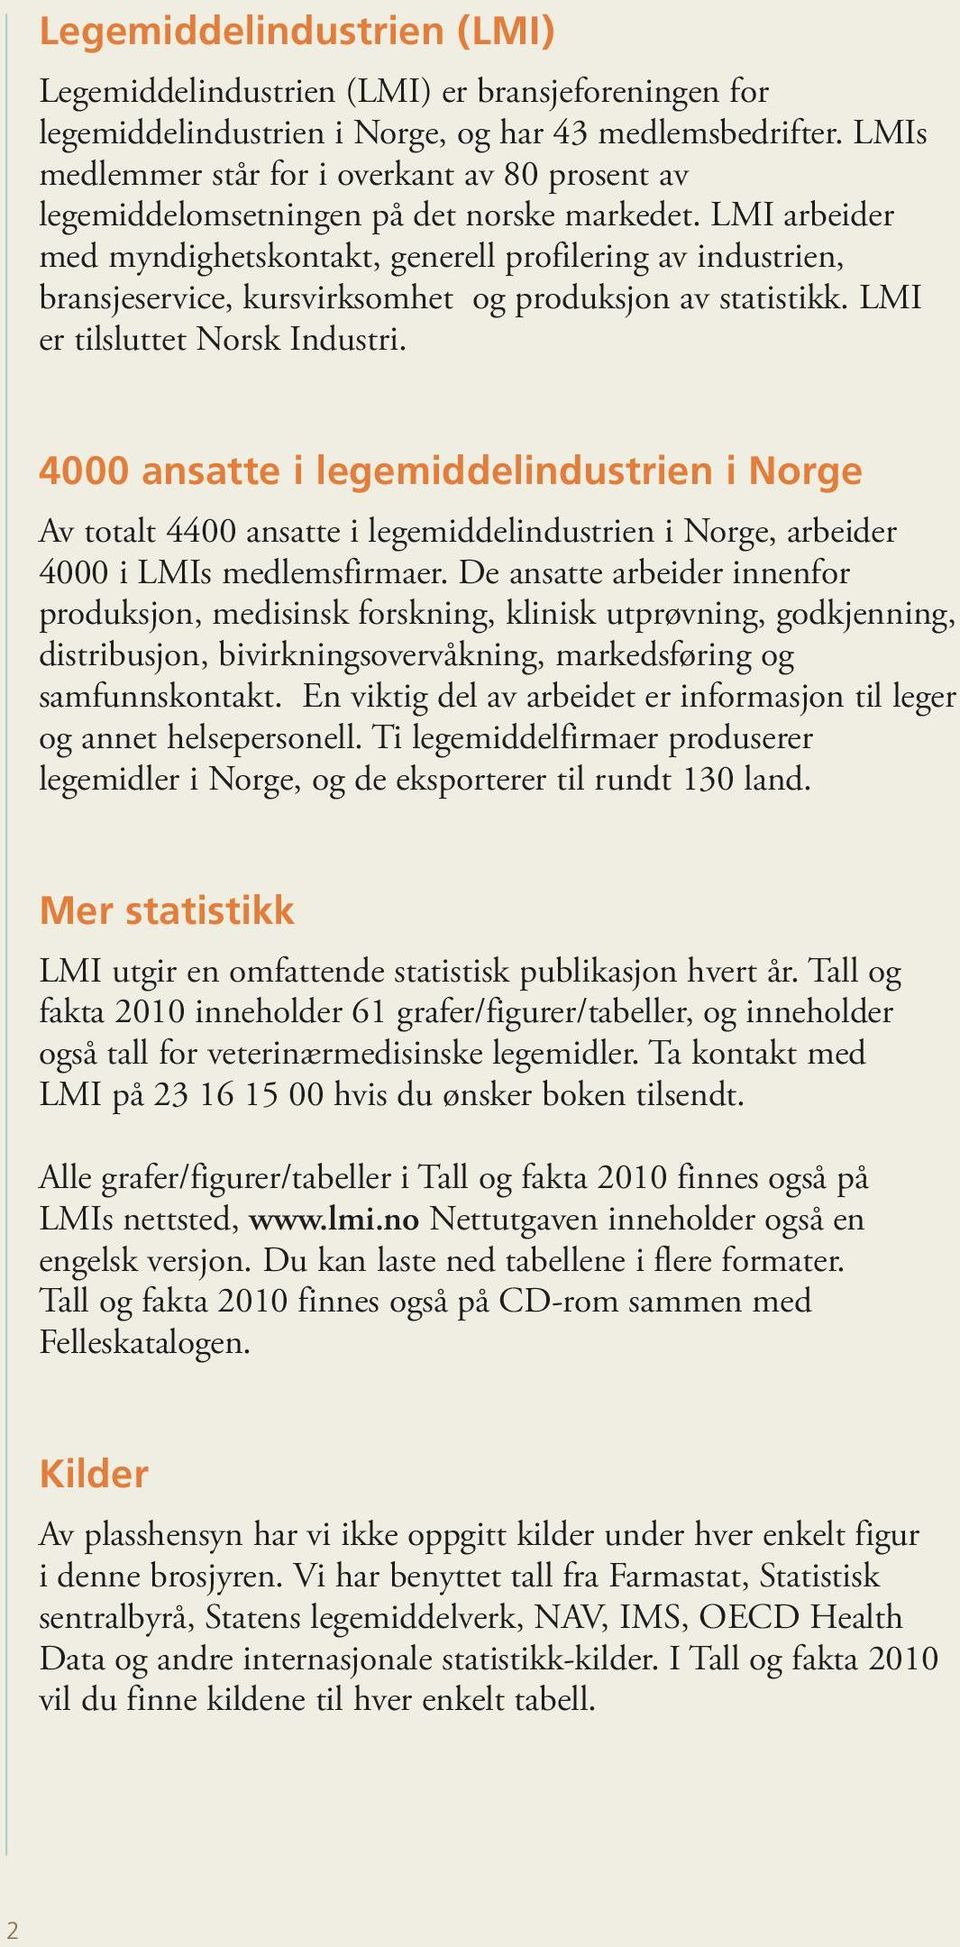 LMI arbeider med myndighetskontakt, generell profilering av industrien, bransjeservice, kursvirksomhet og produksjon av statistikk. LMI er tilsluttet Norsk Industri.